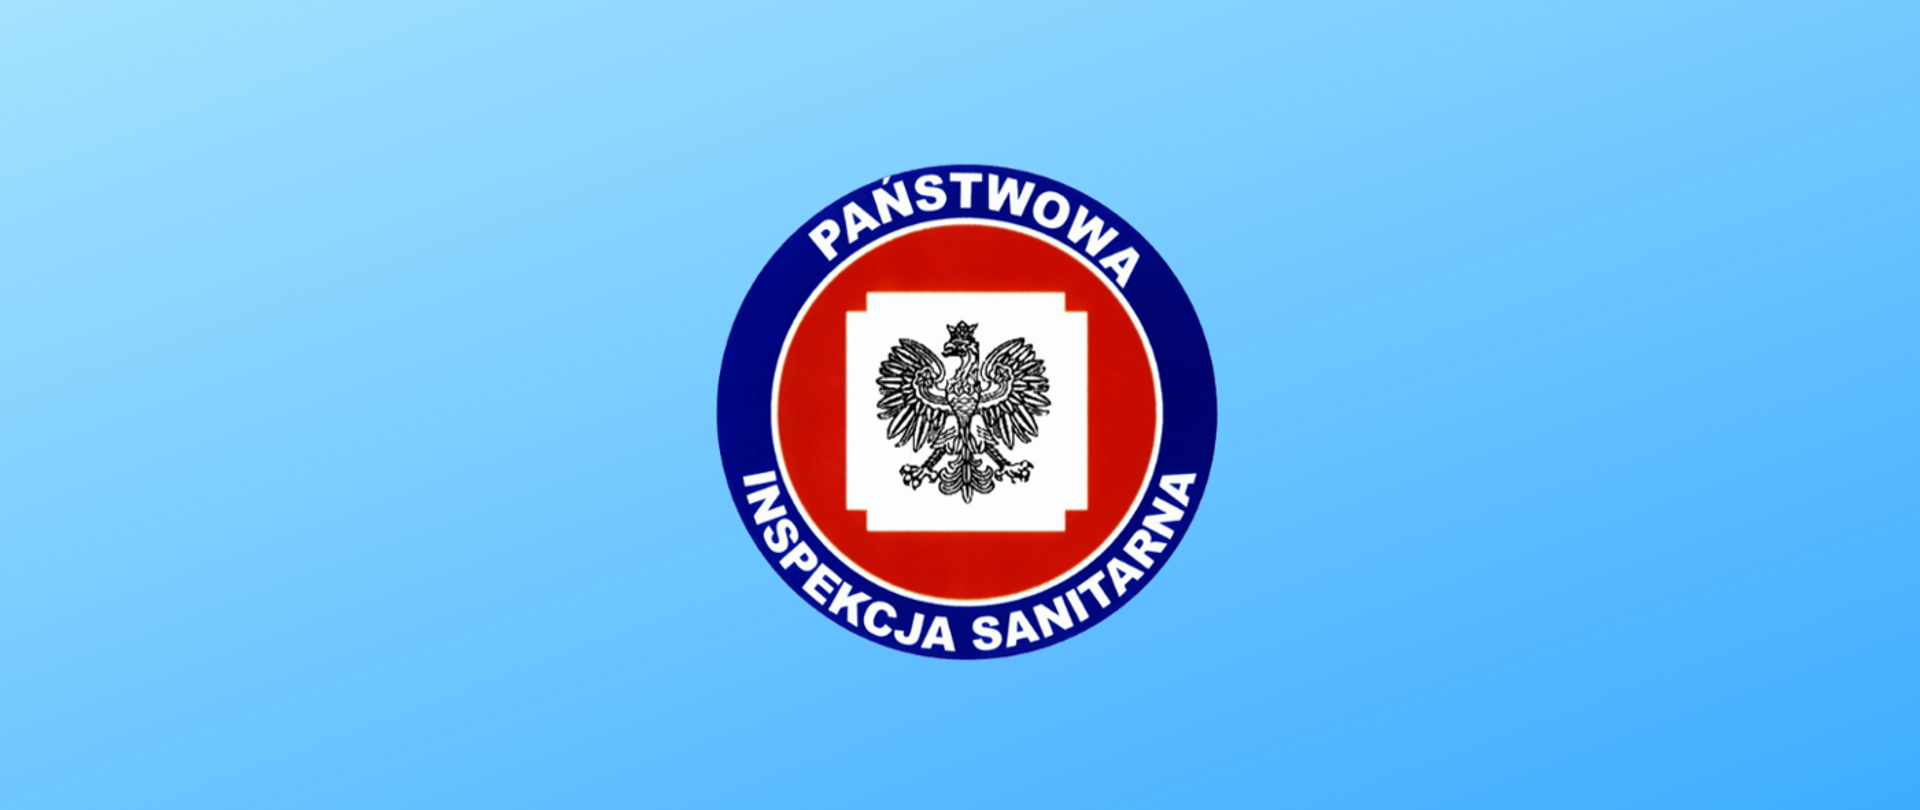 Obrazek przedstawia logo Państwowej Inspekcji Sanitarnej na niebieskim tle. W środku logo znajduje się orzeł w koronie.